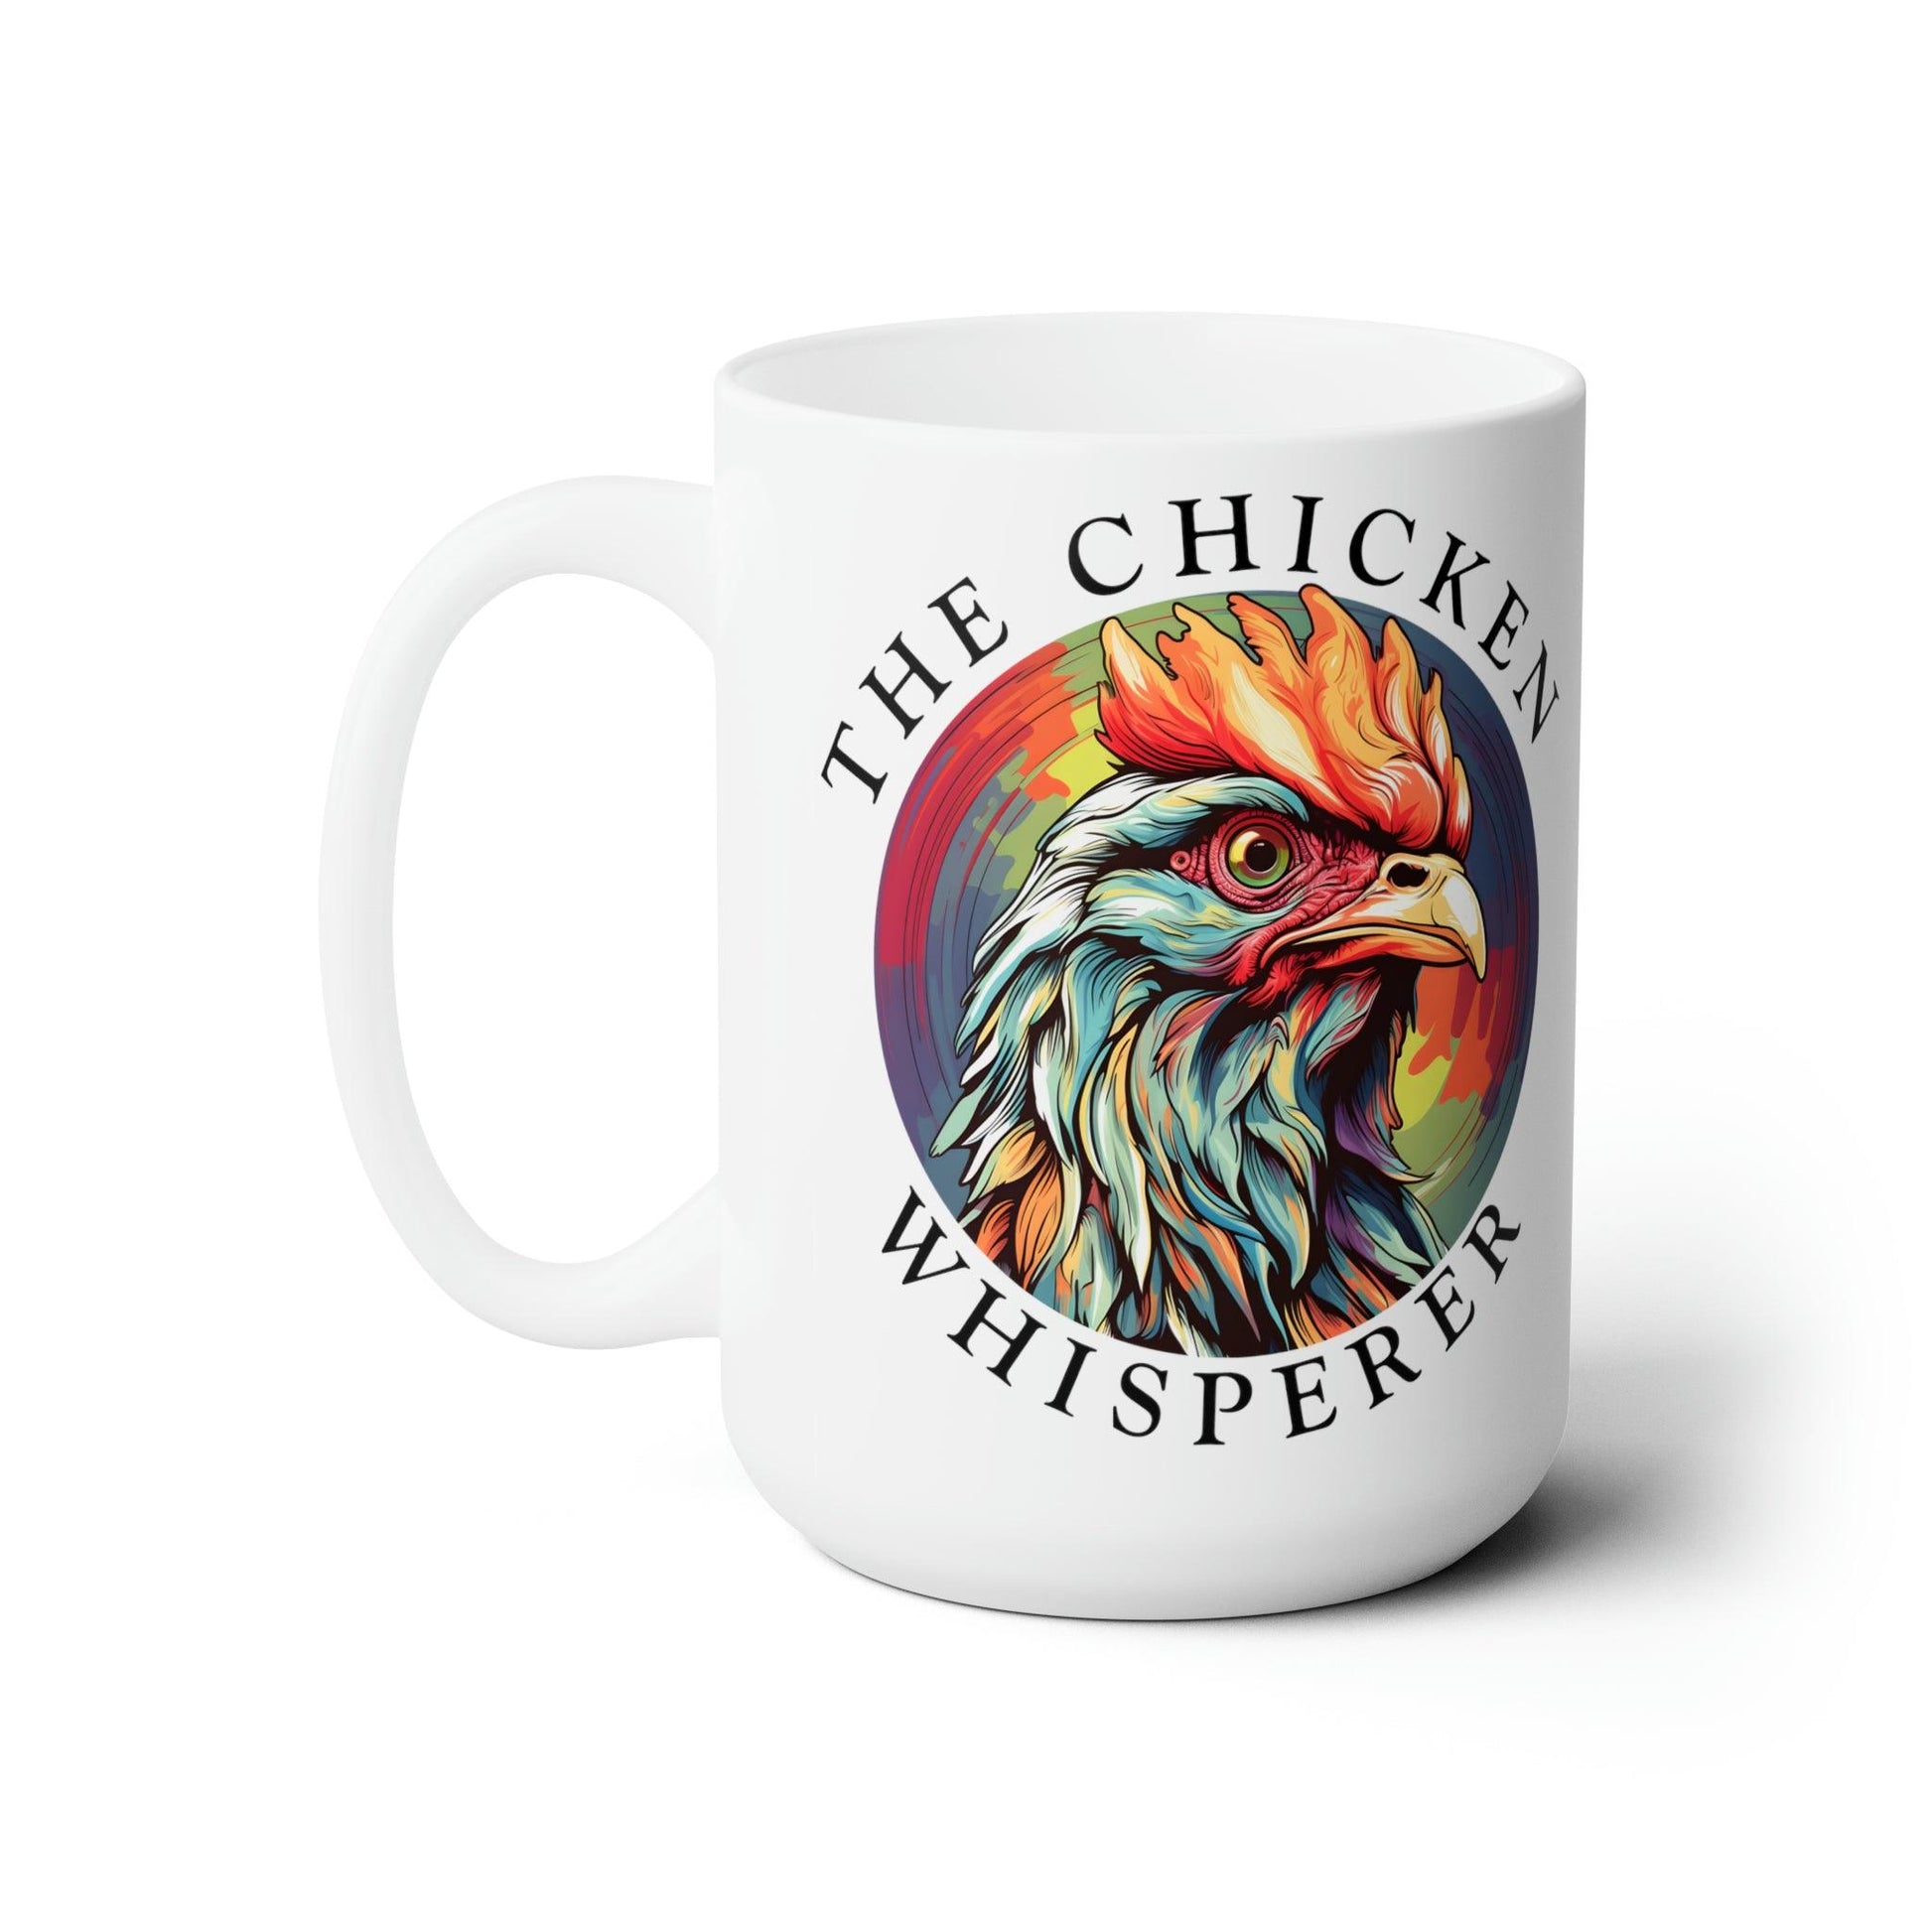 Chicken Whisperer Mug Chicken Coffee Mug Chicken lovers Mug Chicken Lover Gift for her Funny Chicken Cup Roster Mug Retro Vintage coffee Mug - Giftsmojo